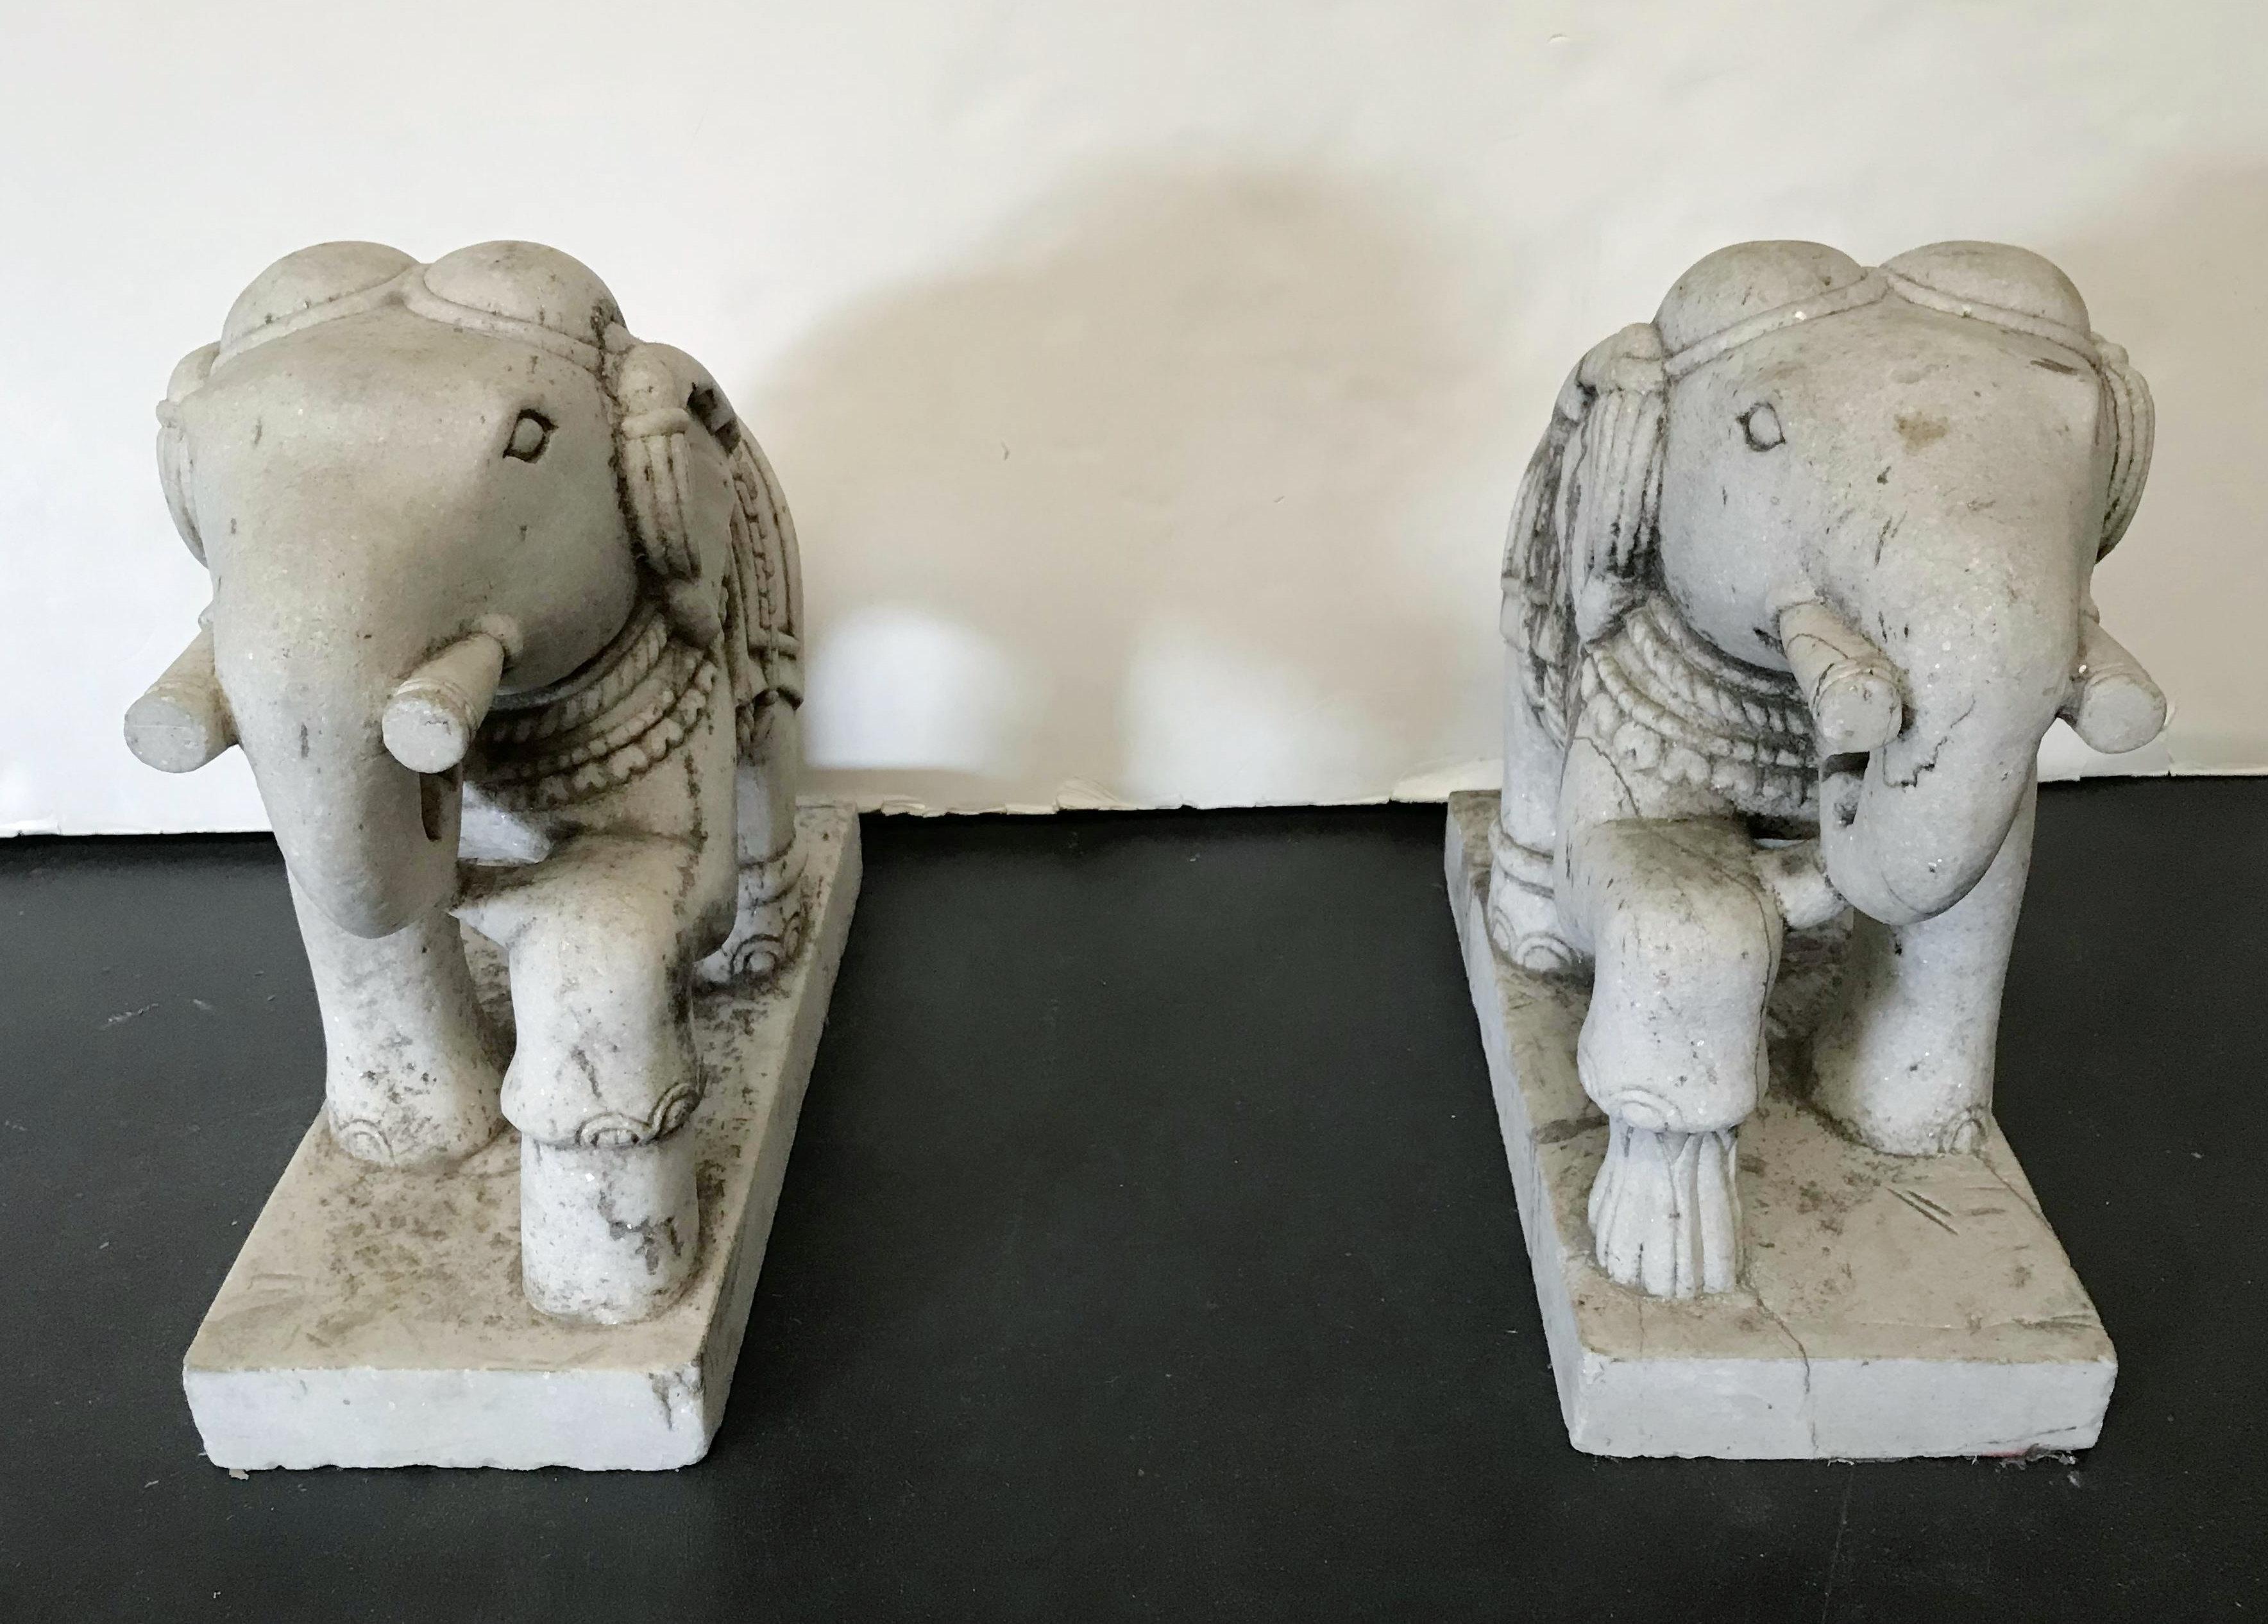 Paar handgeschnitzte Elefanten aus Stein, Italien, um 1930
Maße: Höhe 17 Zoll, Breite 8 Zoll, Tiefe 17 Zoll
Paar auf Lager in Los Angeles
Bestellnummer: FABIOLTD F196